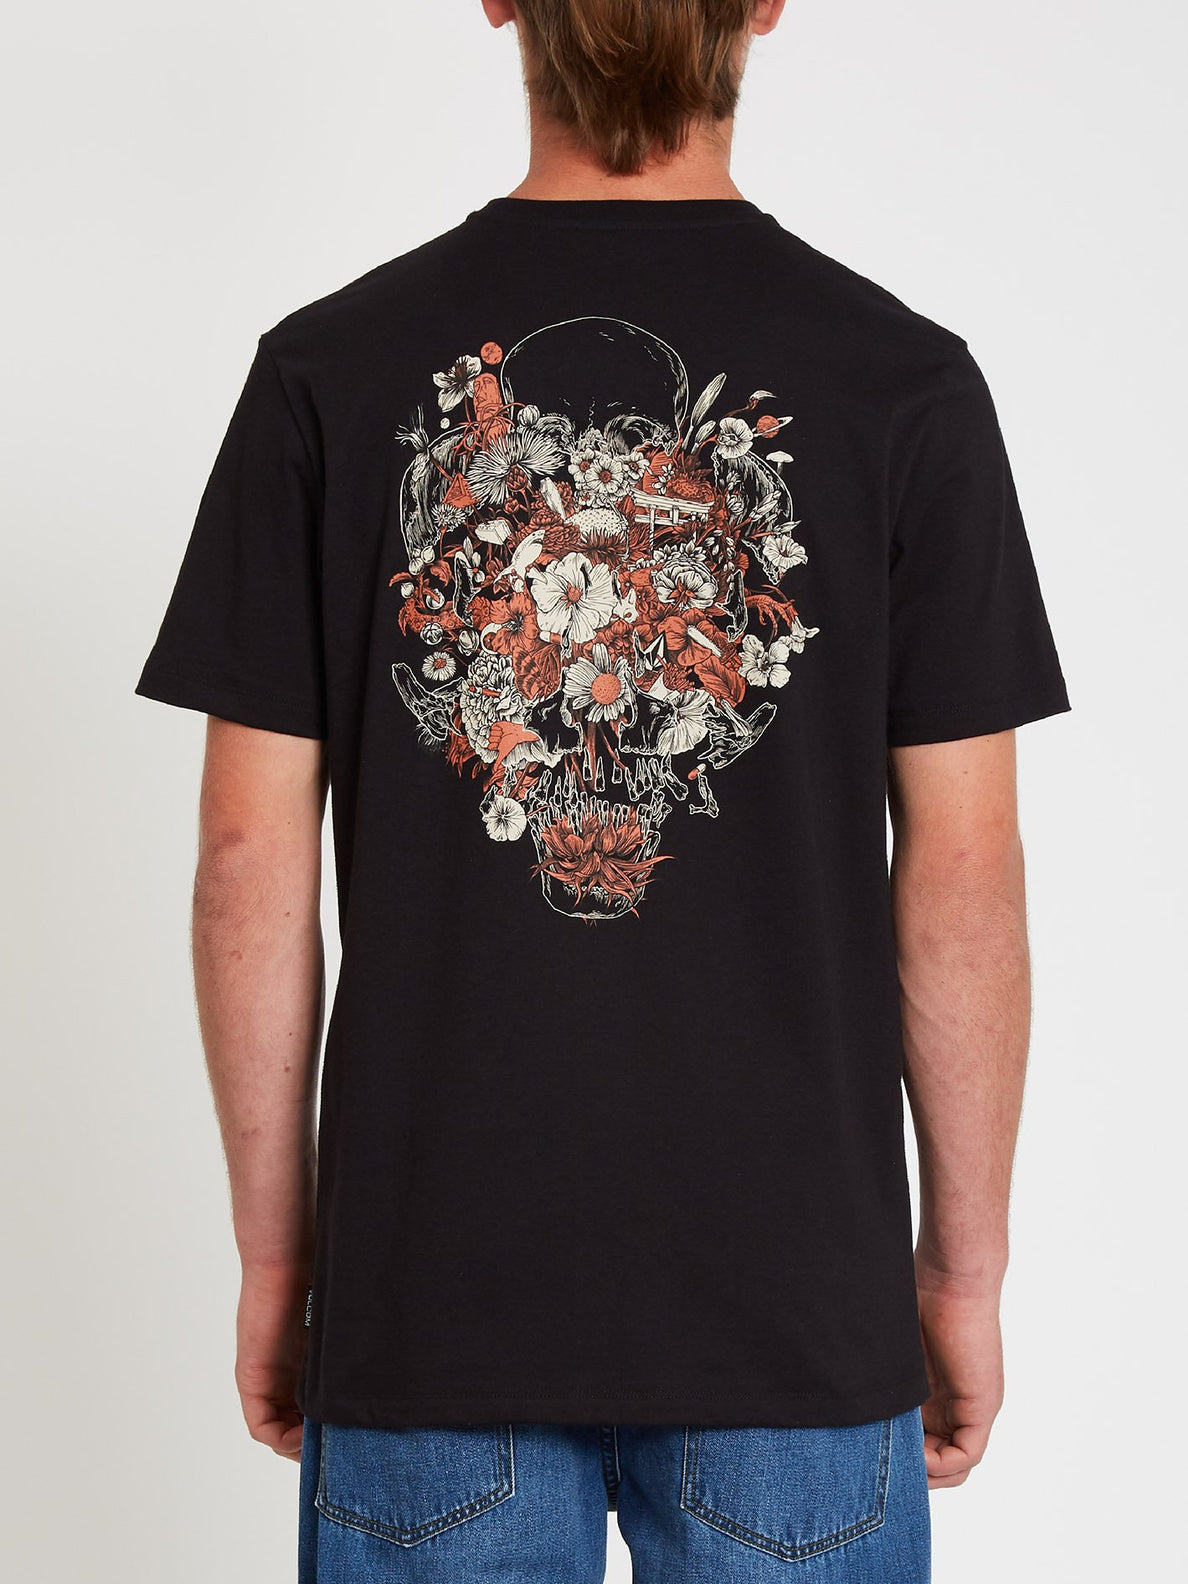 Fortifem T-shirt - Black (A5212109_BLK) [F]